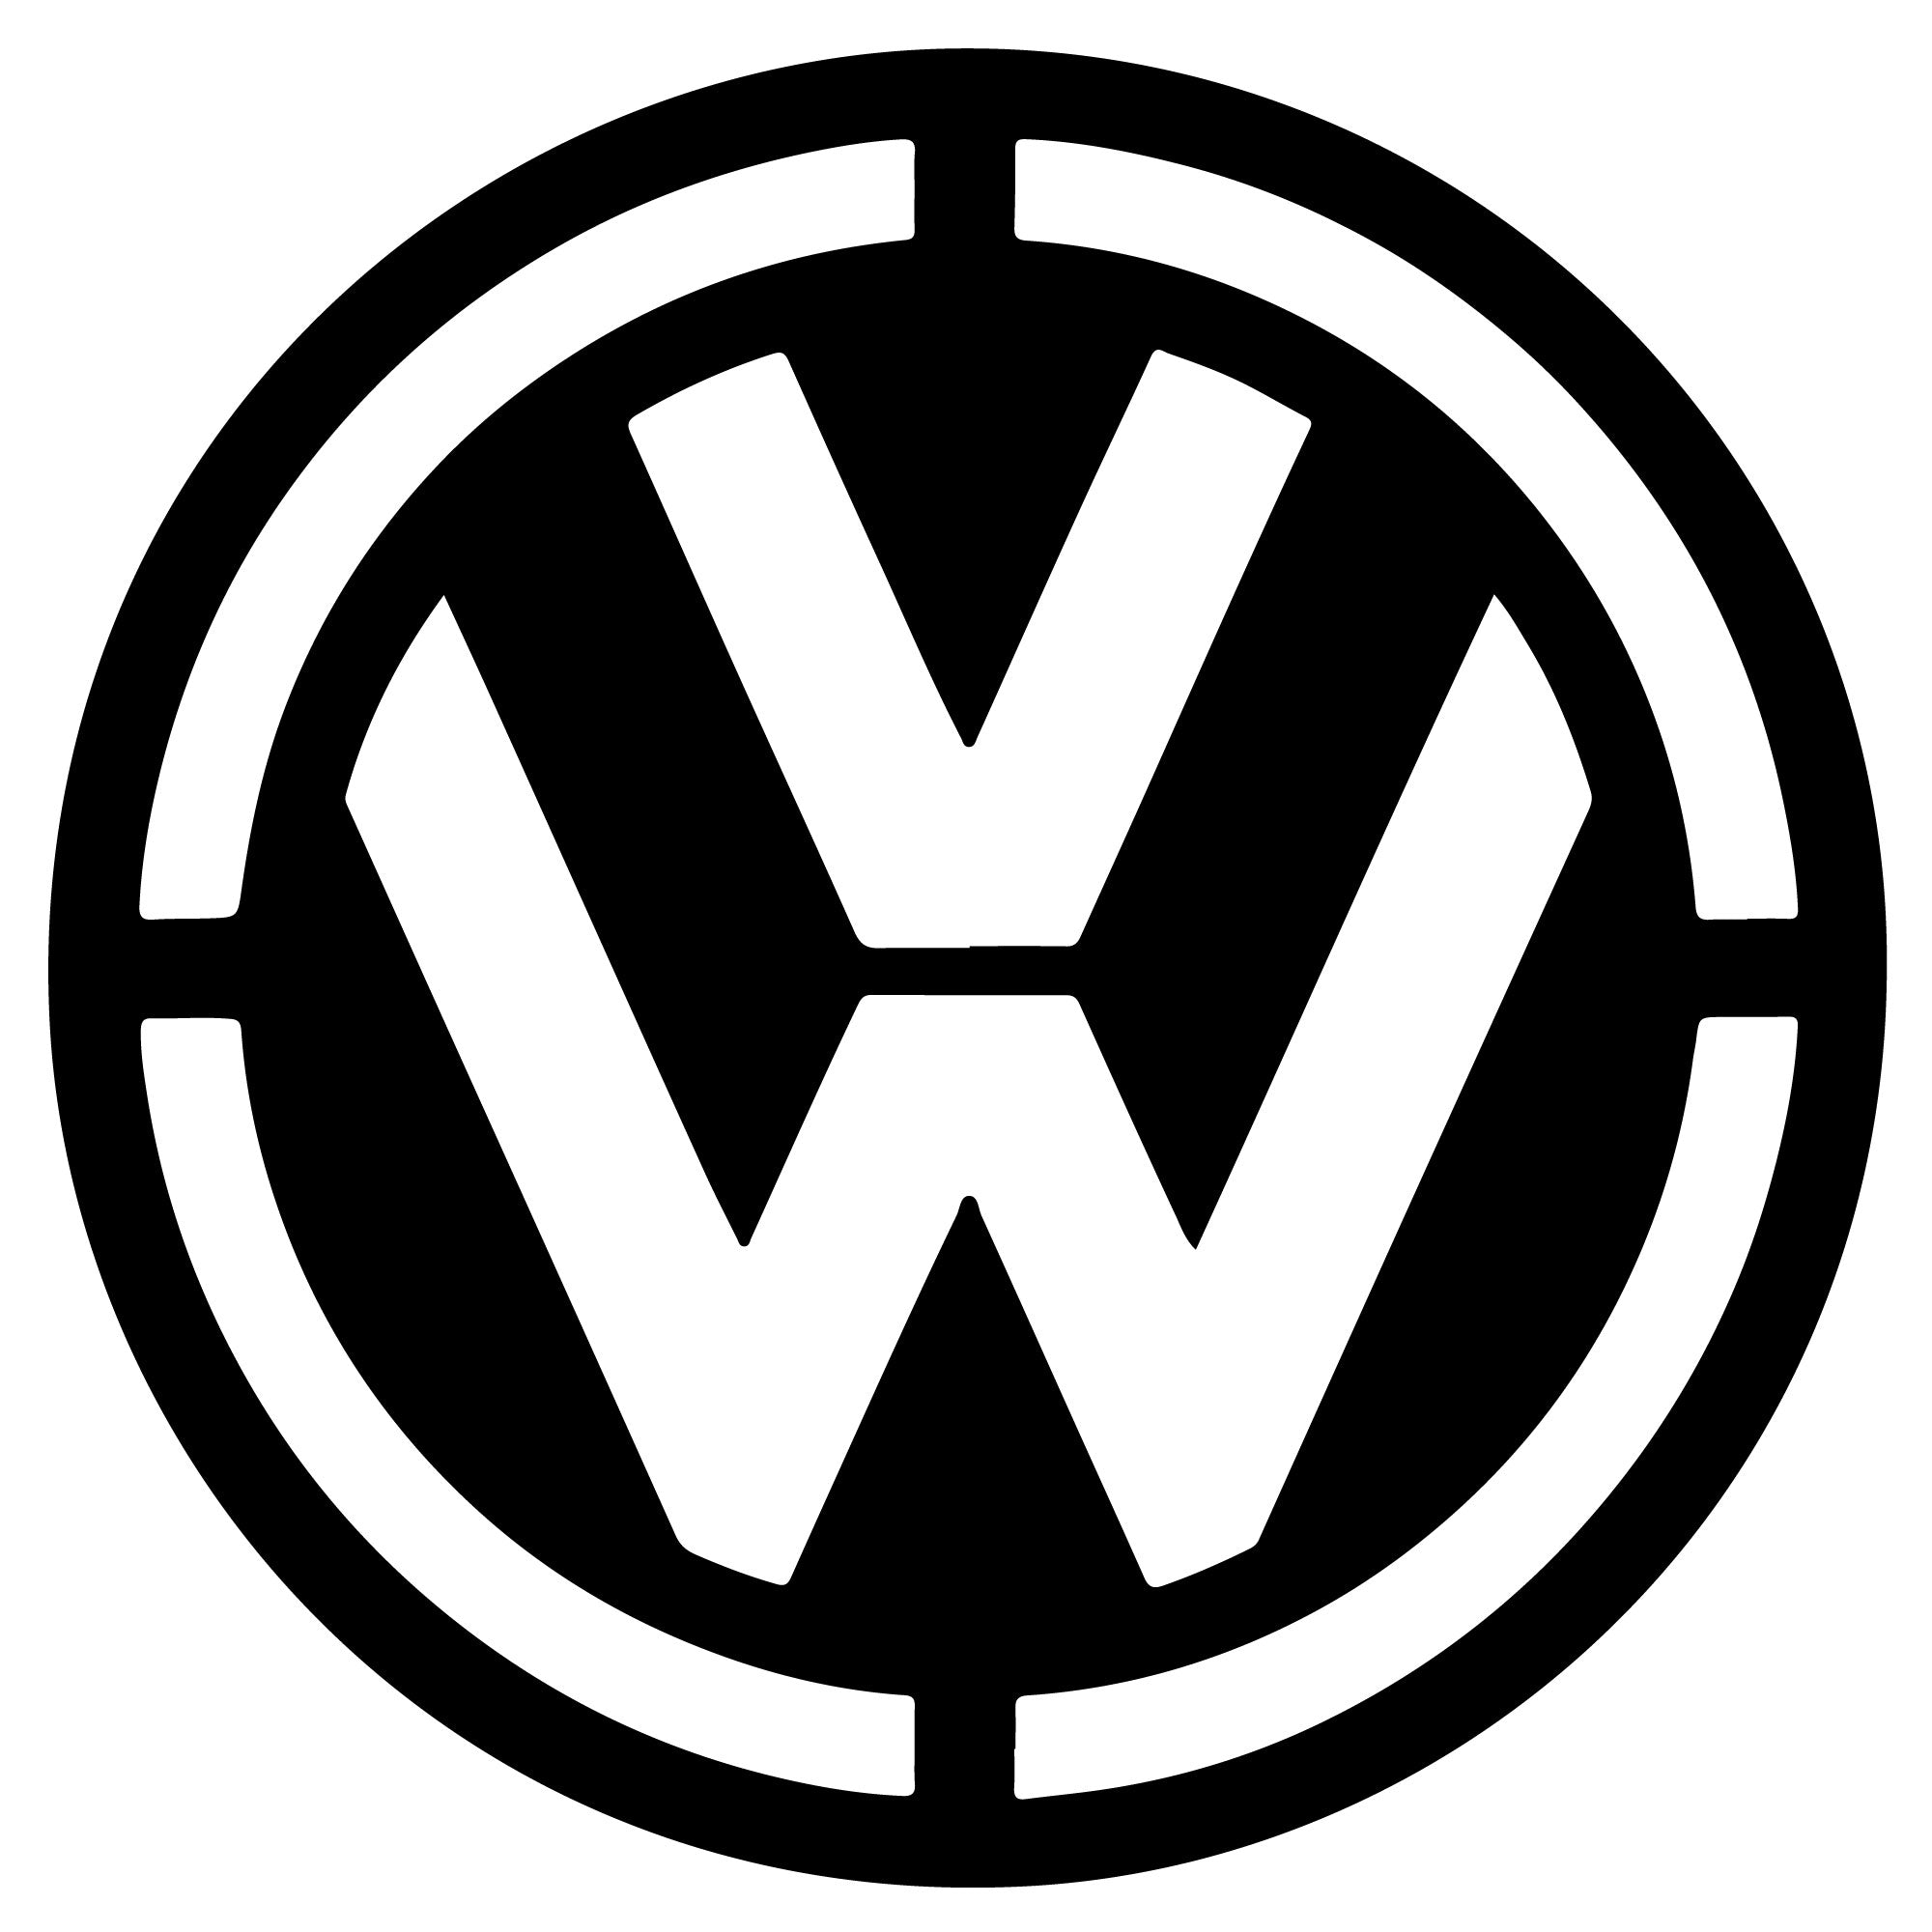 Emblème de voiture - Volkswagen - Décoration murale métal moderne